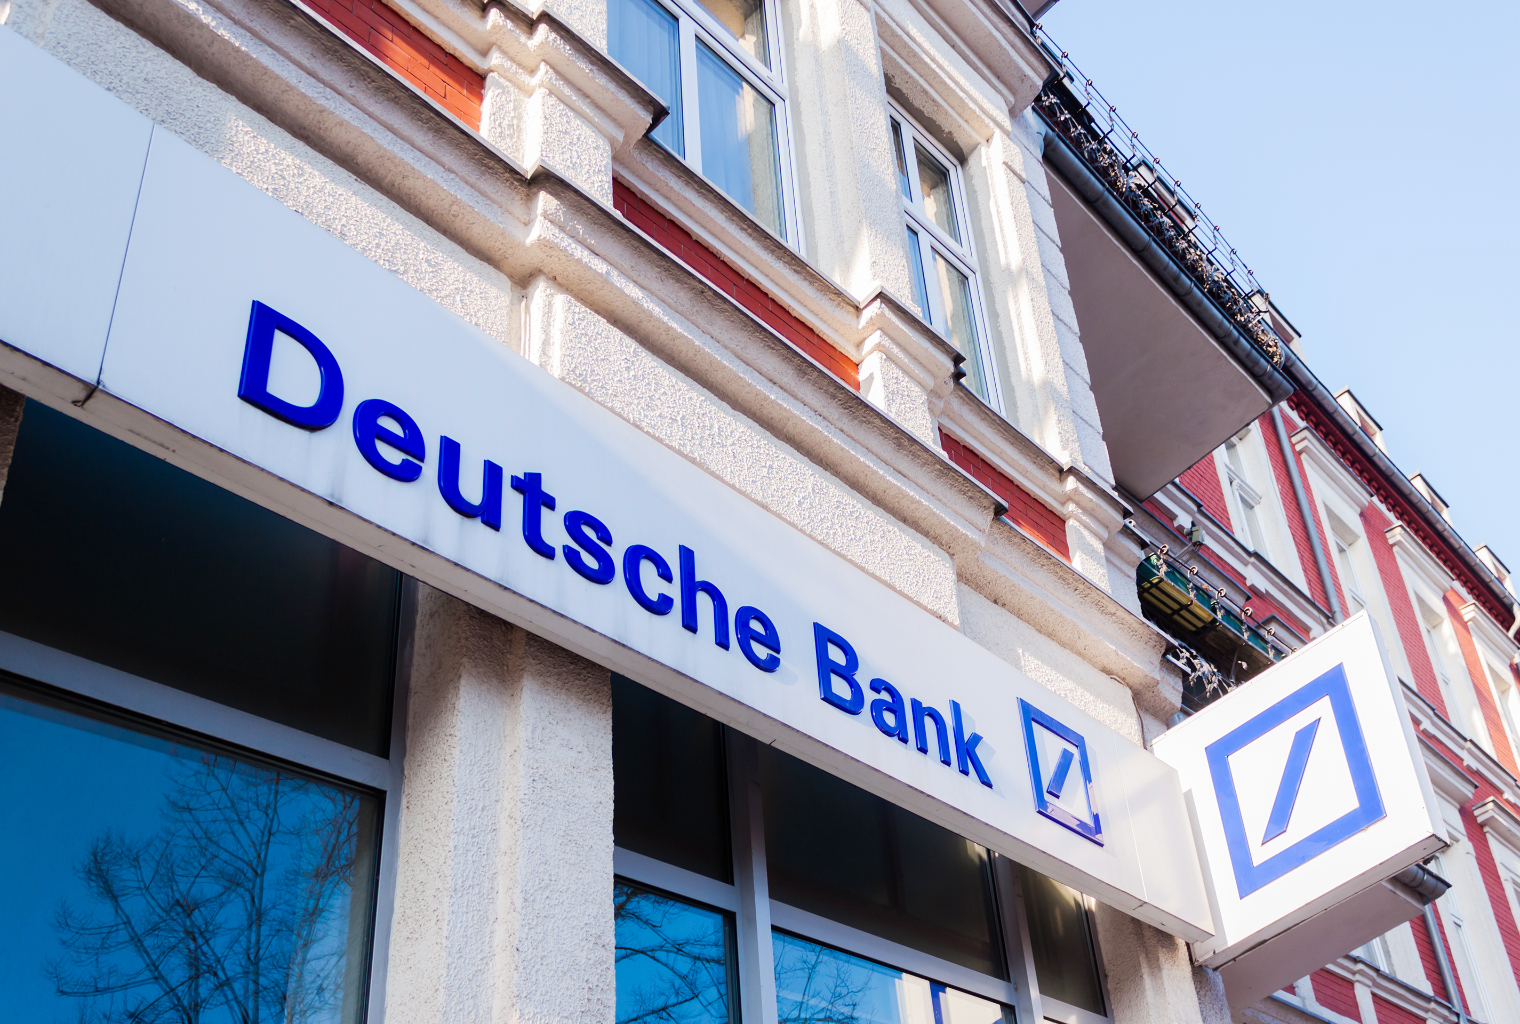 Deutsche bank forex polska tax lien investing course free